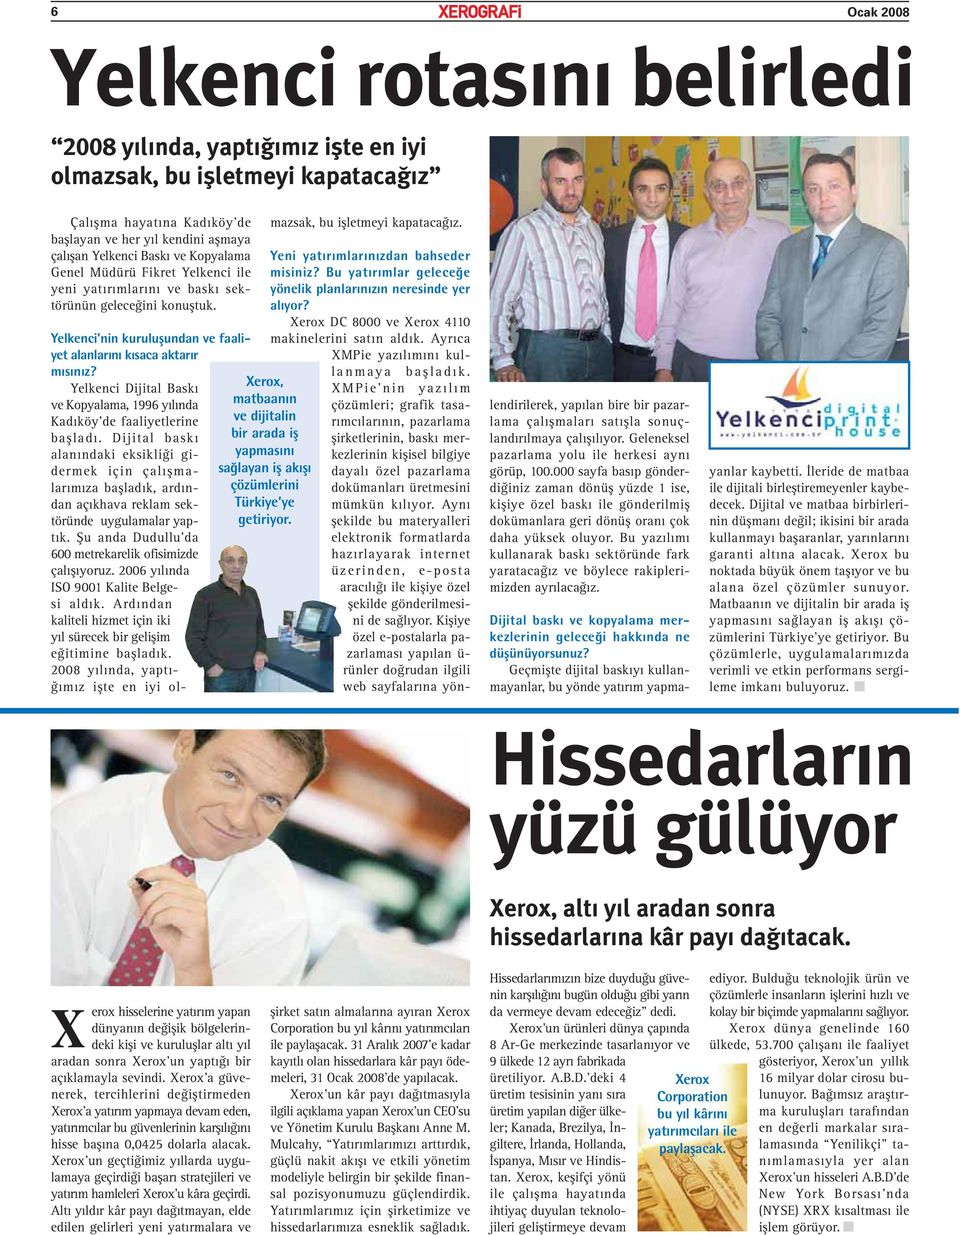 Yelkenci nin kuruluşundan ve faaliyet alanlarını kısaca aktarır Xerox, matbaanın ve dijitalin bir arada iş yapmasını sağlayan iş akışı çözümlerini Türkiye ye getiriyor. mısınız?